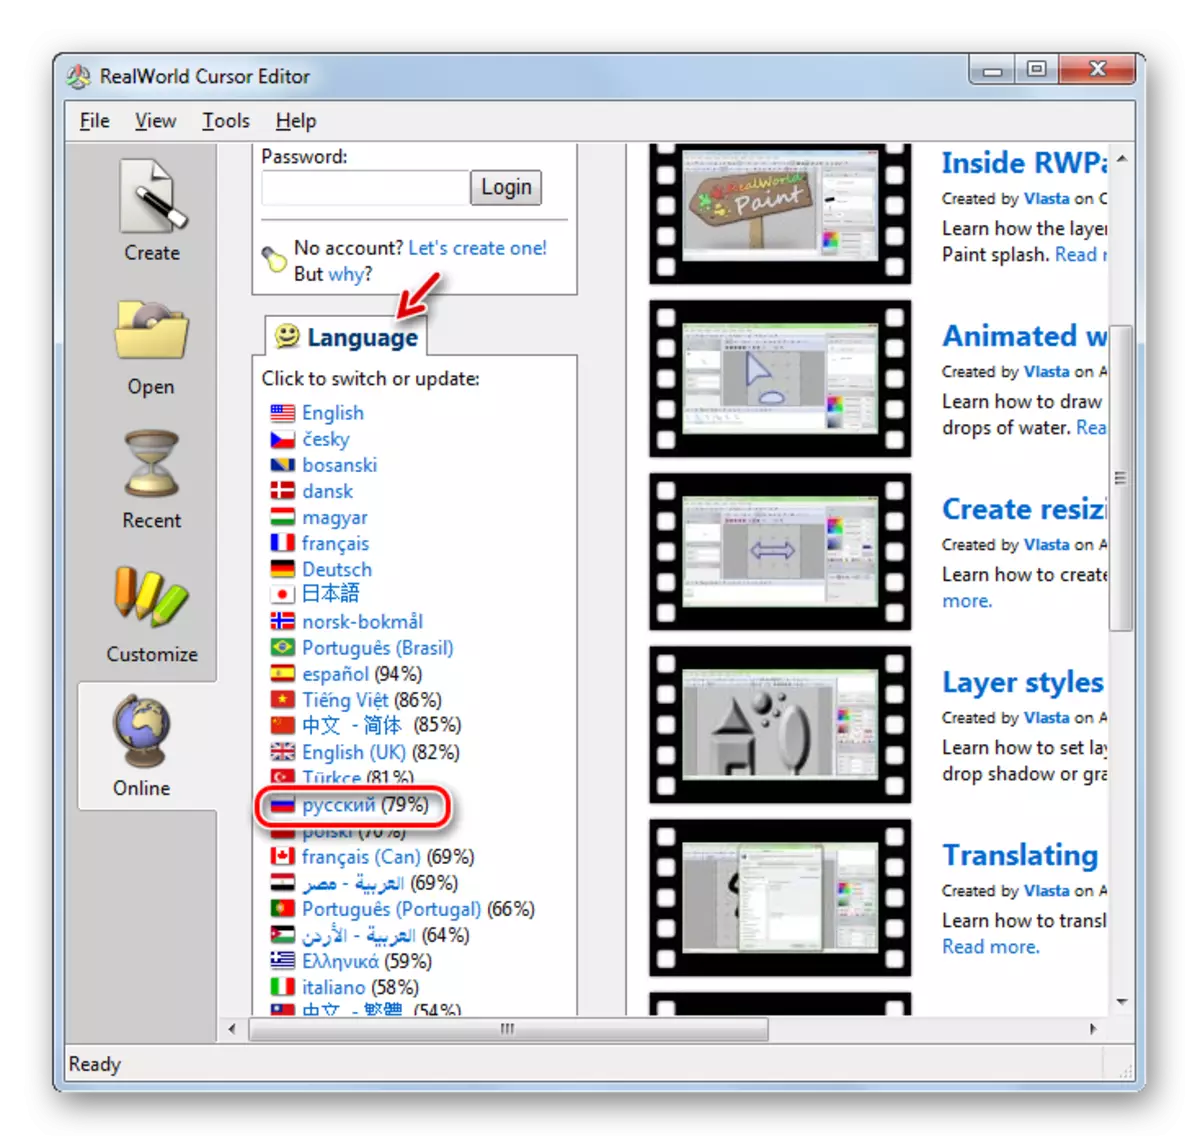 De Ingelske-sprekkende applikaasje fan 'e russyske oanfraach feroarje nei de Russyske taalferzje yn it Redworld Cursor-bewurker yn Windows 7